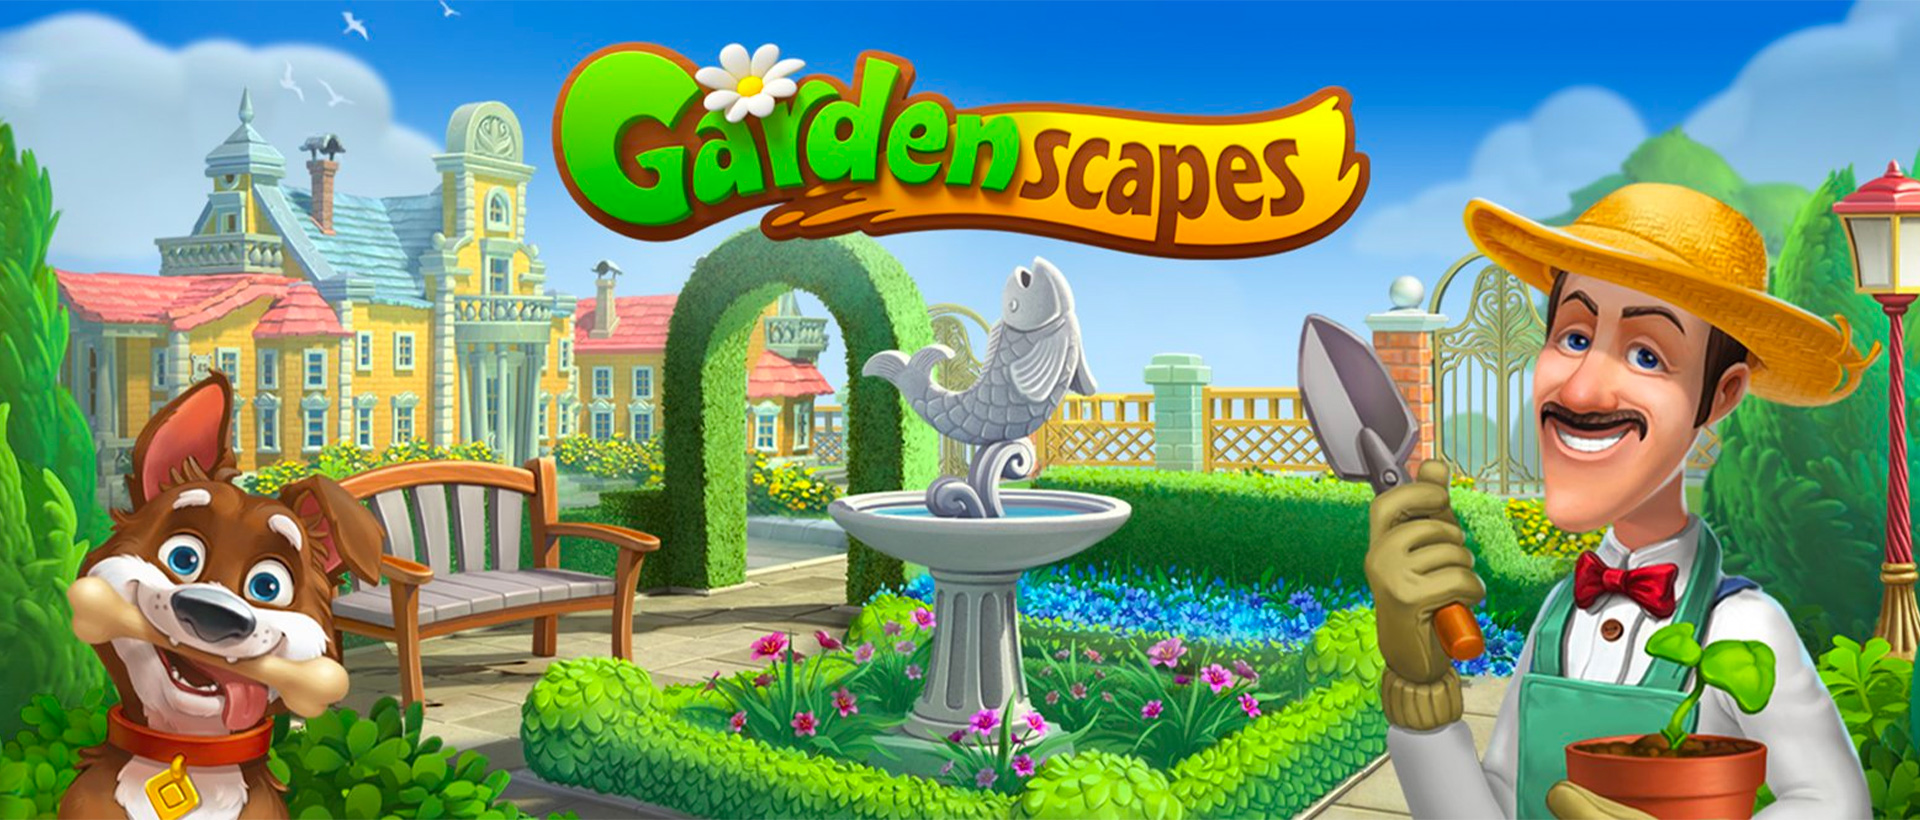 꿈의 정원 (Gardenscapes) PC 버전, 컴퓨터에서 설치하고 안전하게 즐기자 - 녹스 앱플레이어